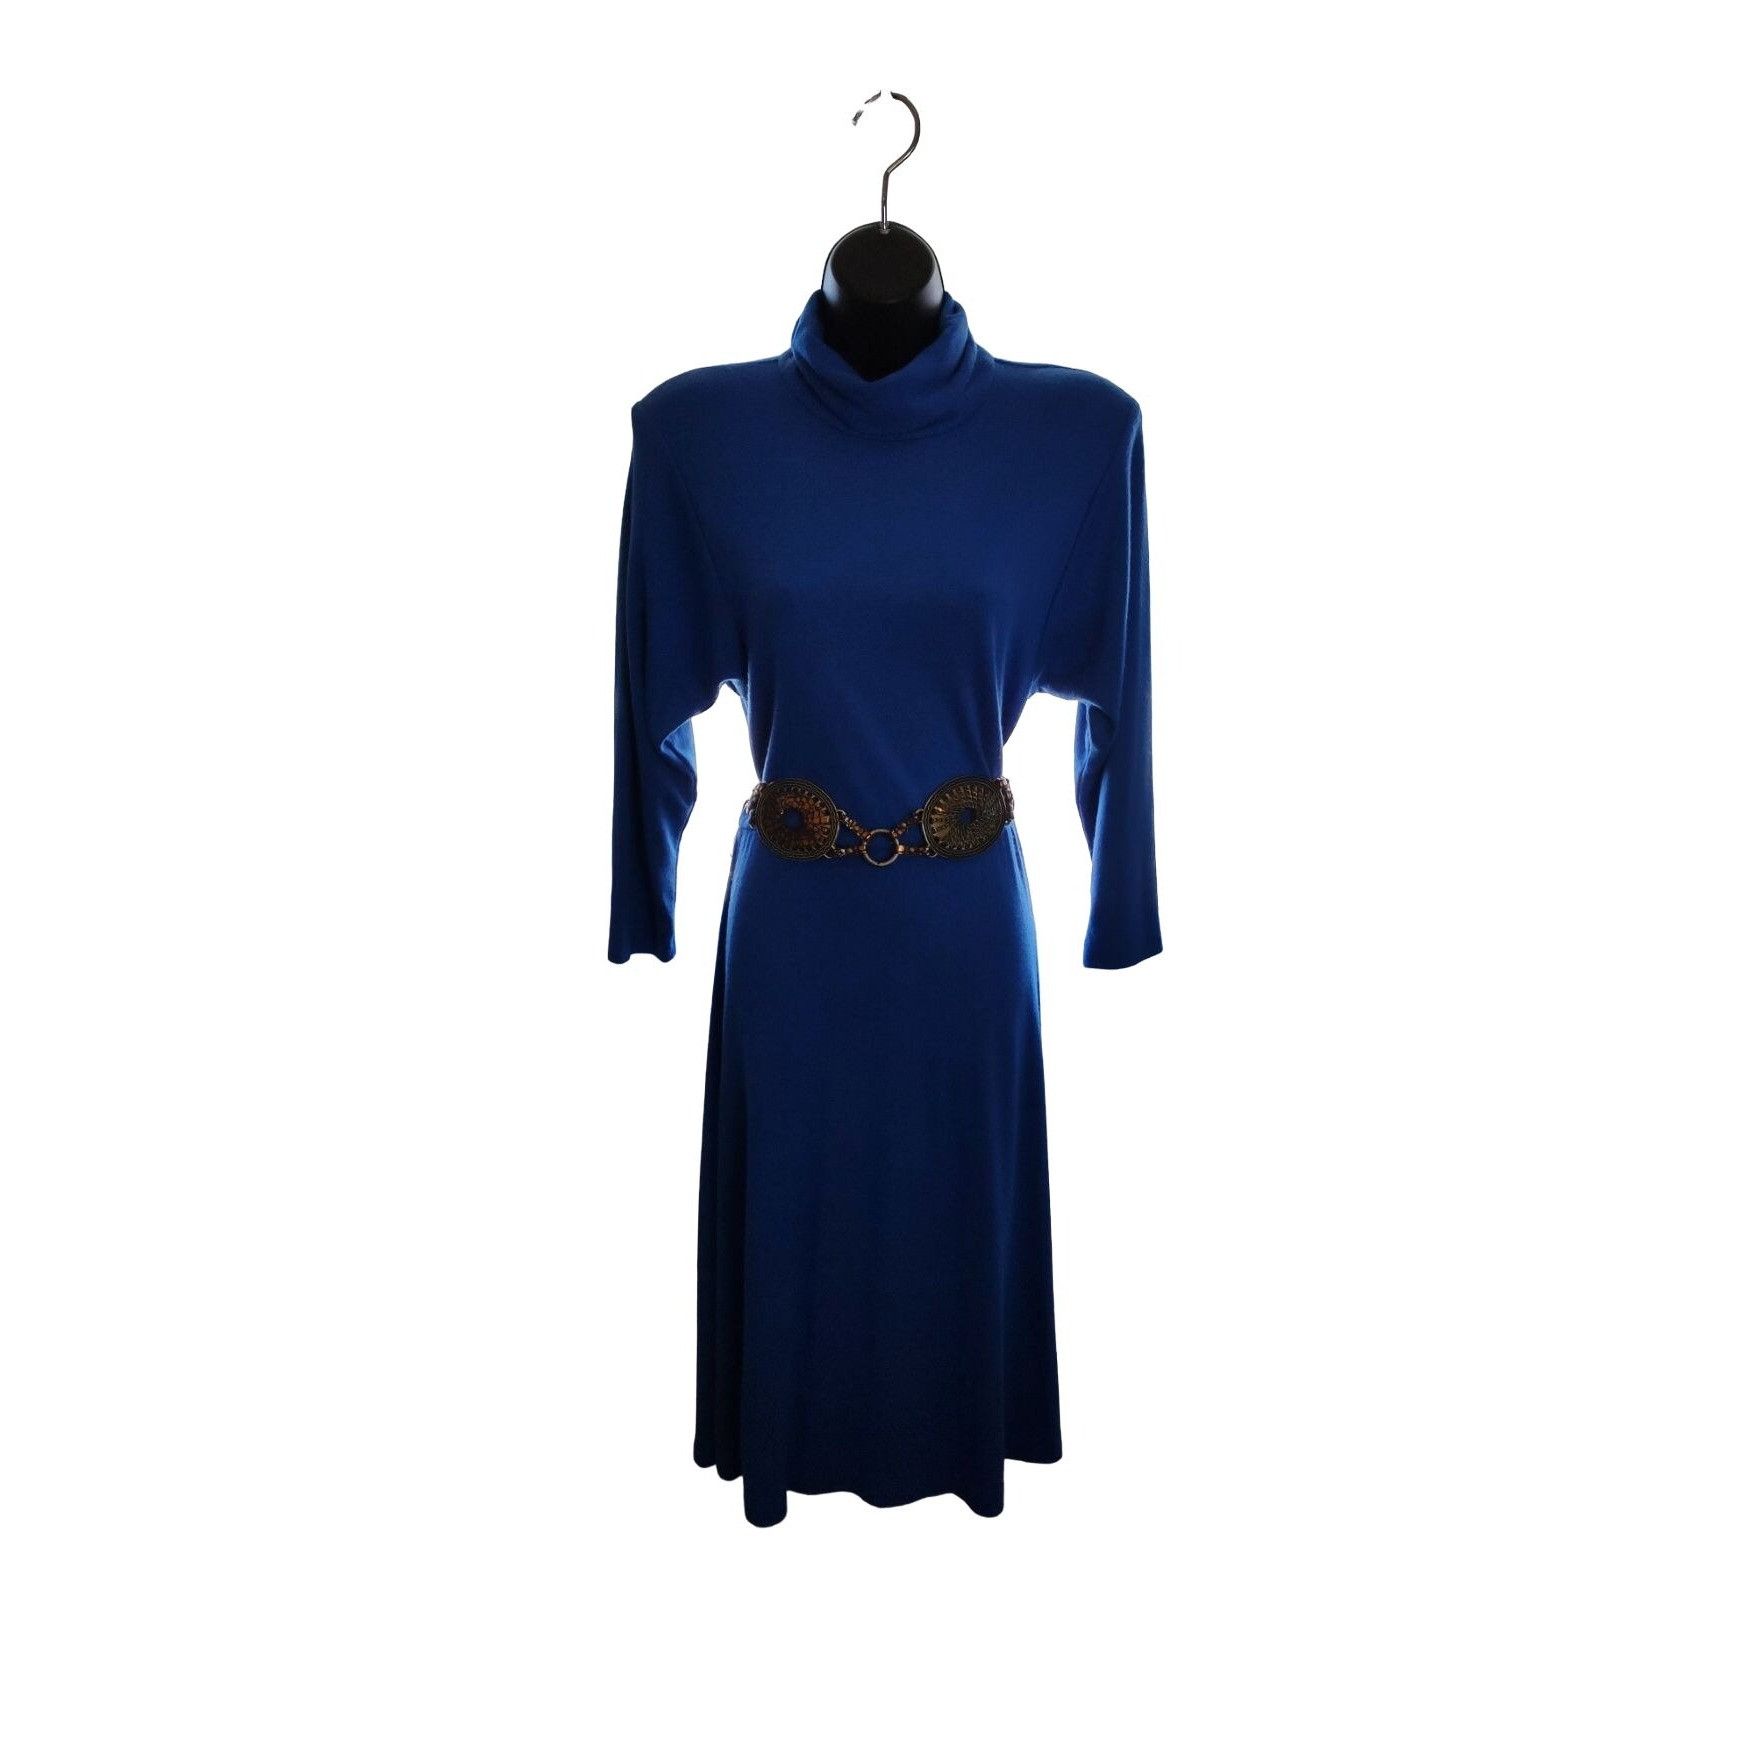 Vintage 1980's Joni Blair Blue Midi Dress Size M / US 6-8 / IT 42-44 - 2 Preview